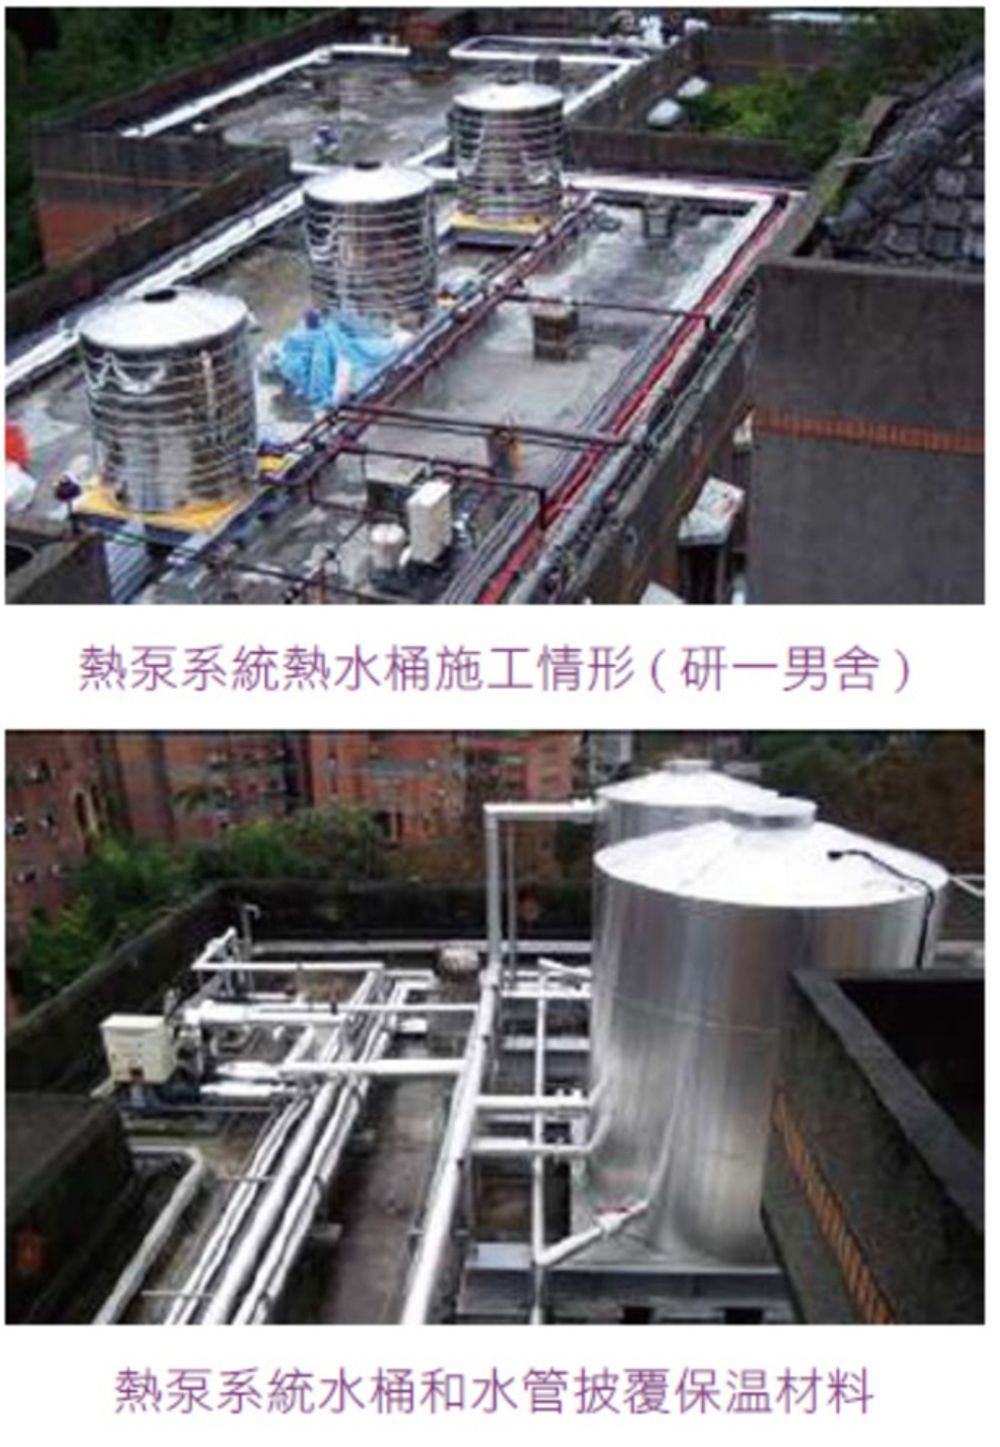 上圖為熱泵系統水桶施工情形(研一男舍)，下圖為熱泵系統水桶和水管披覆保溫材料